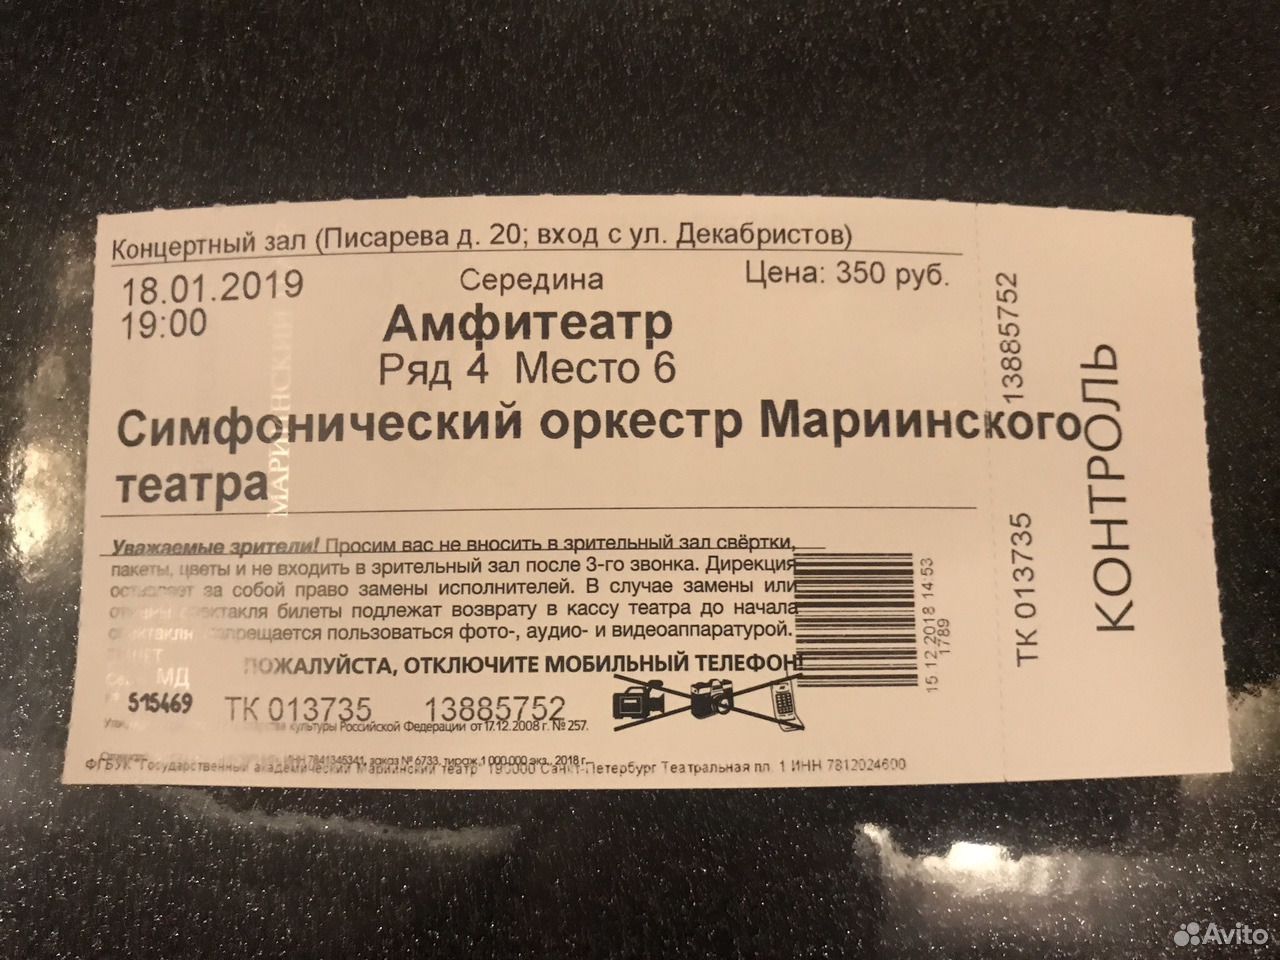 Сколько стоит билет в мариинском театре. Билет на симфонический оркестр. Как выглядит билет на концерт. Пригласительные билеты на концерт симфонического оркестра. Старый билет на симфонический оркестр.